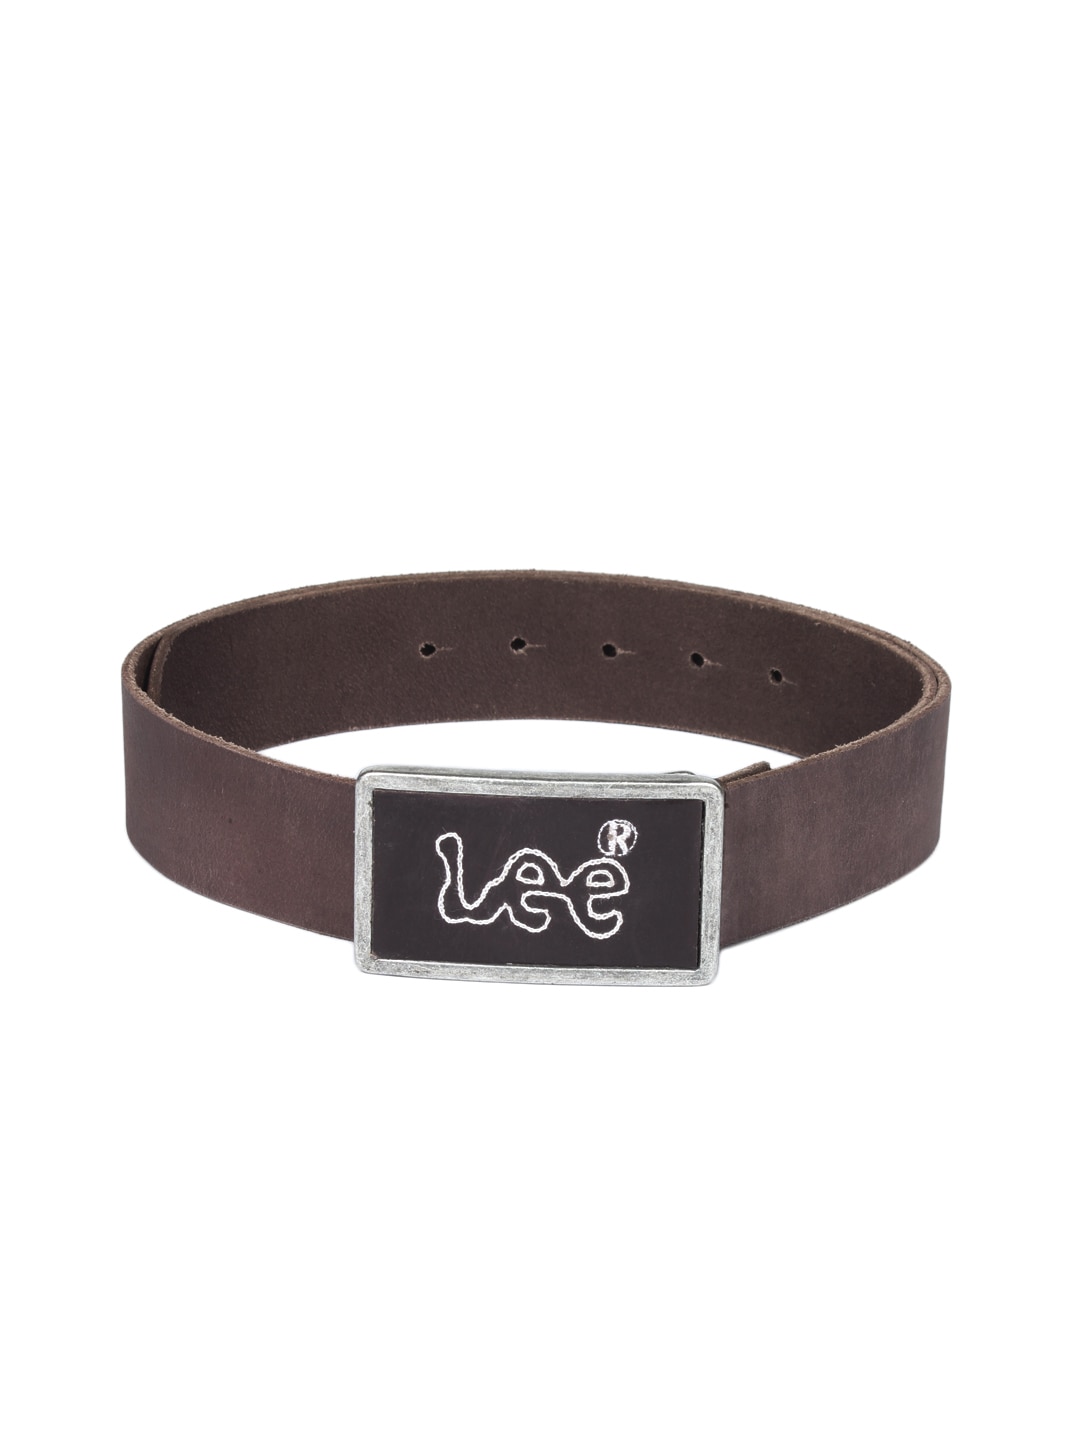 Lee Men Brown Leather Belt